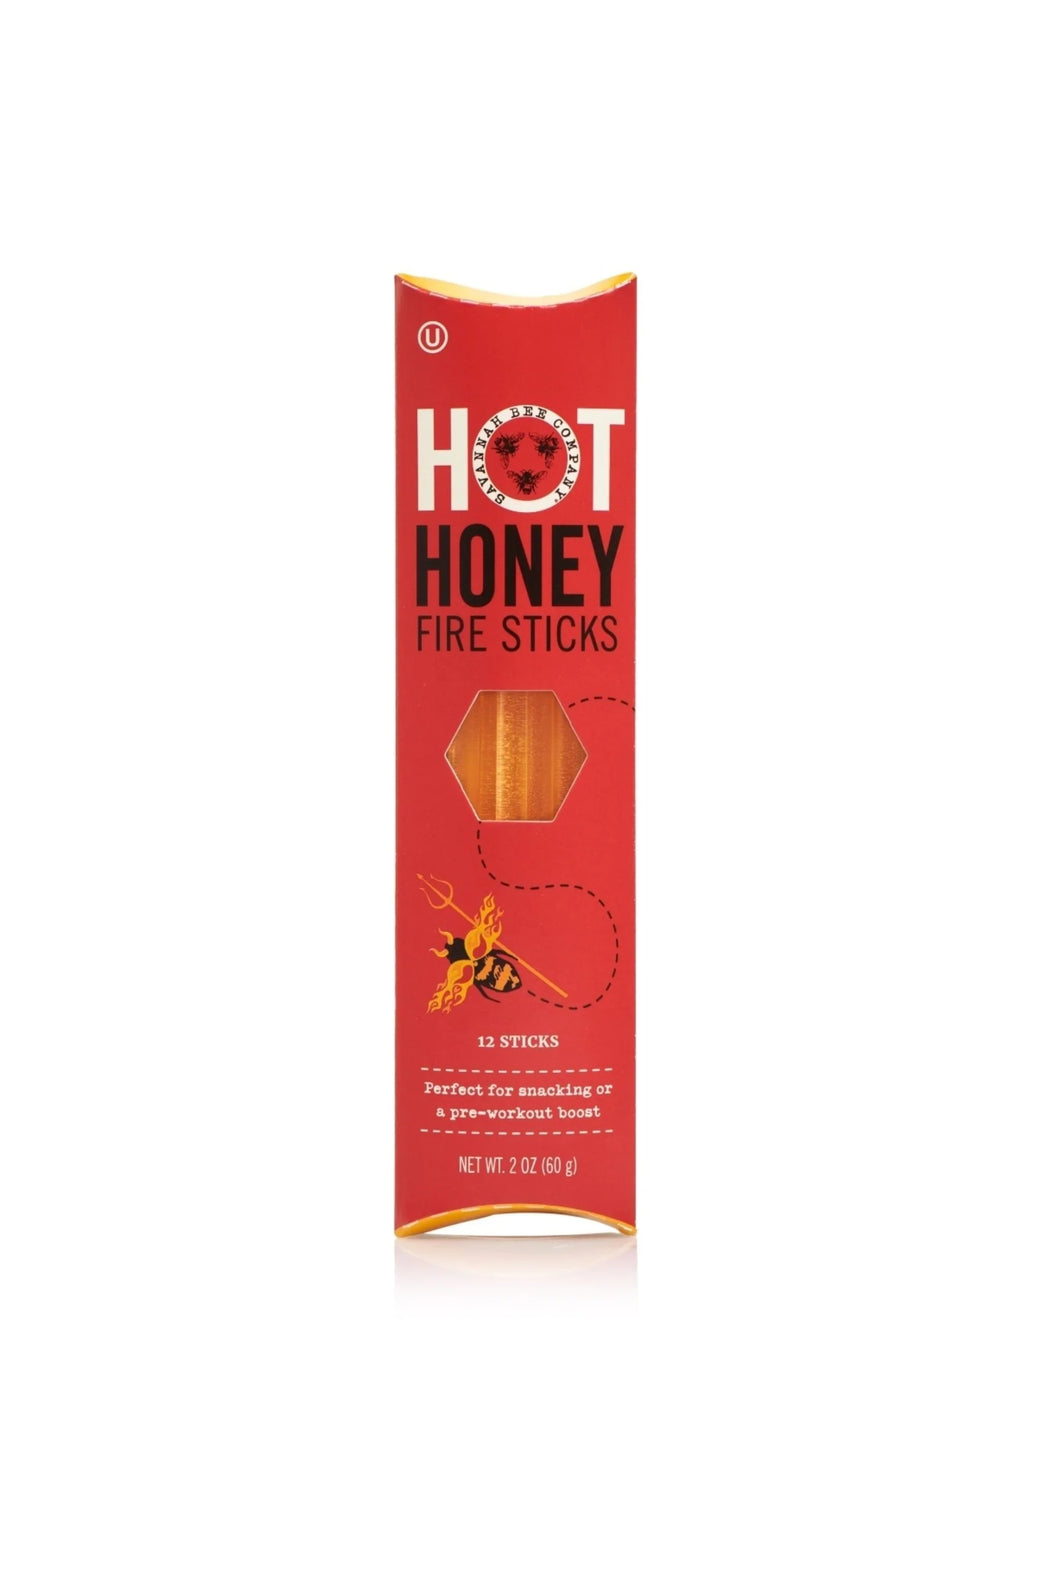 Savannah Bee Company: Hot Honey Fire Sticks